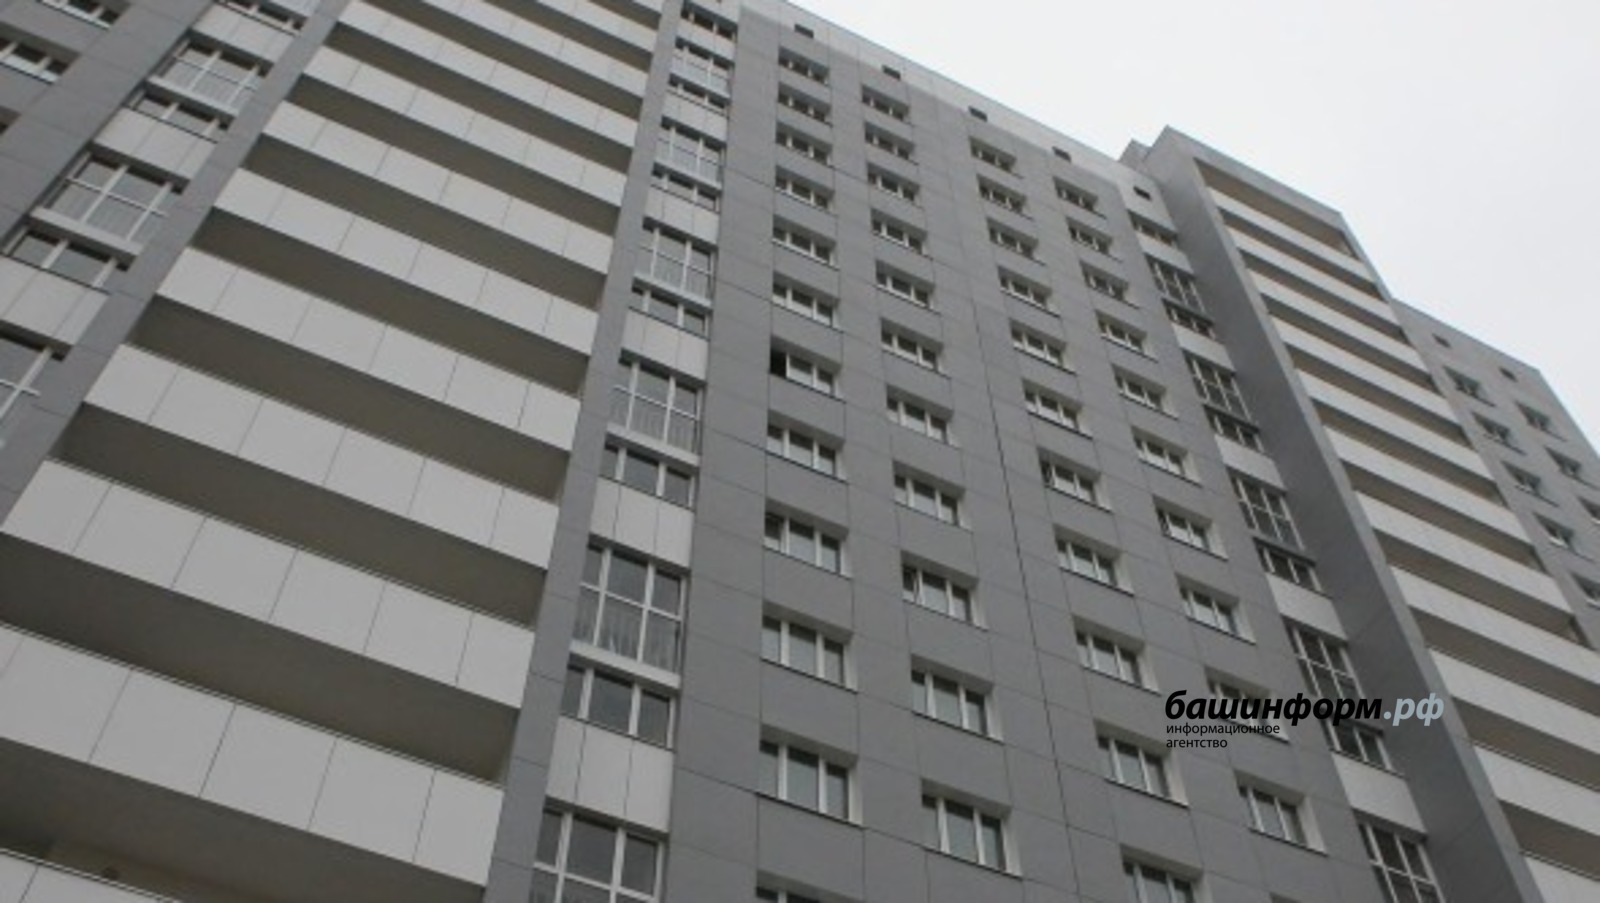 Жители Башкирии смогут купить или продать квартиру через госуслуги